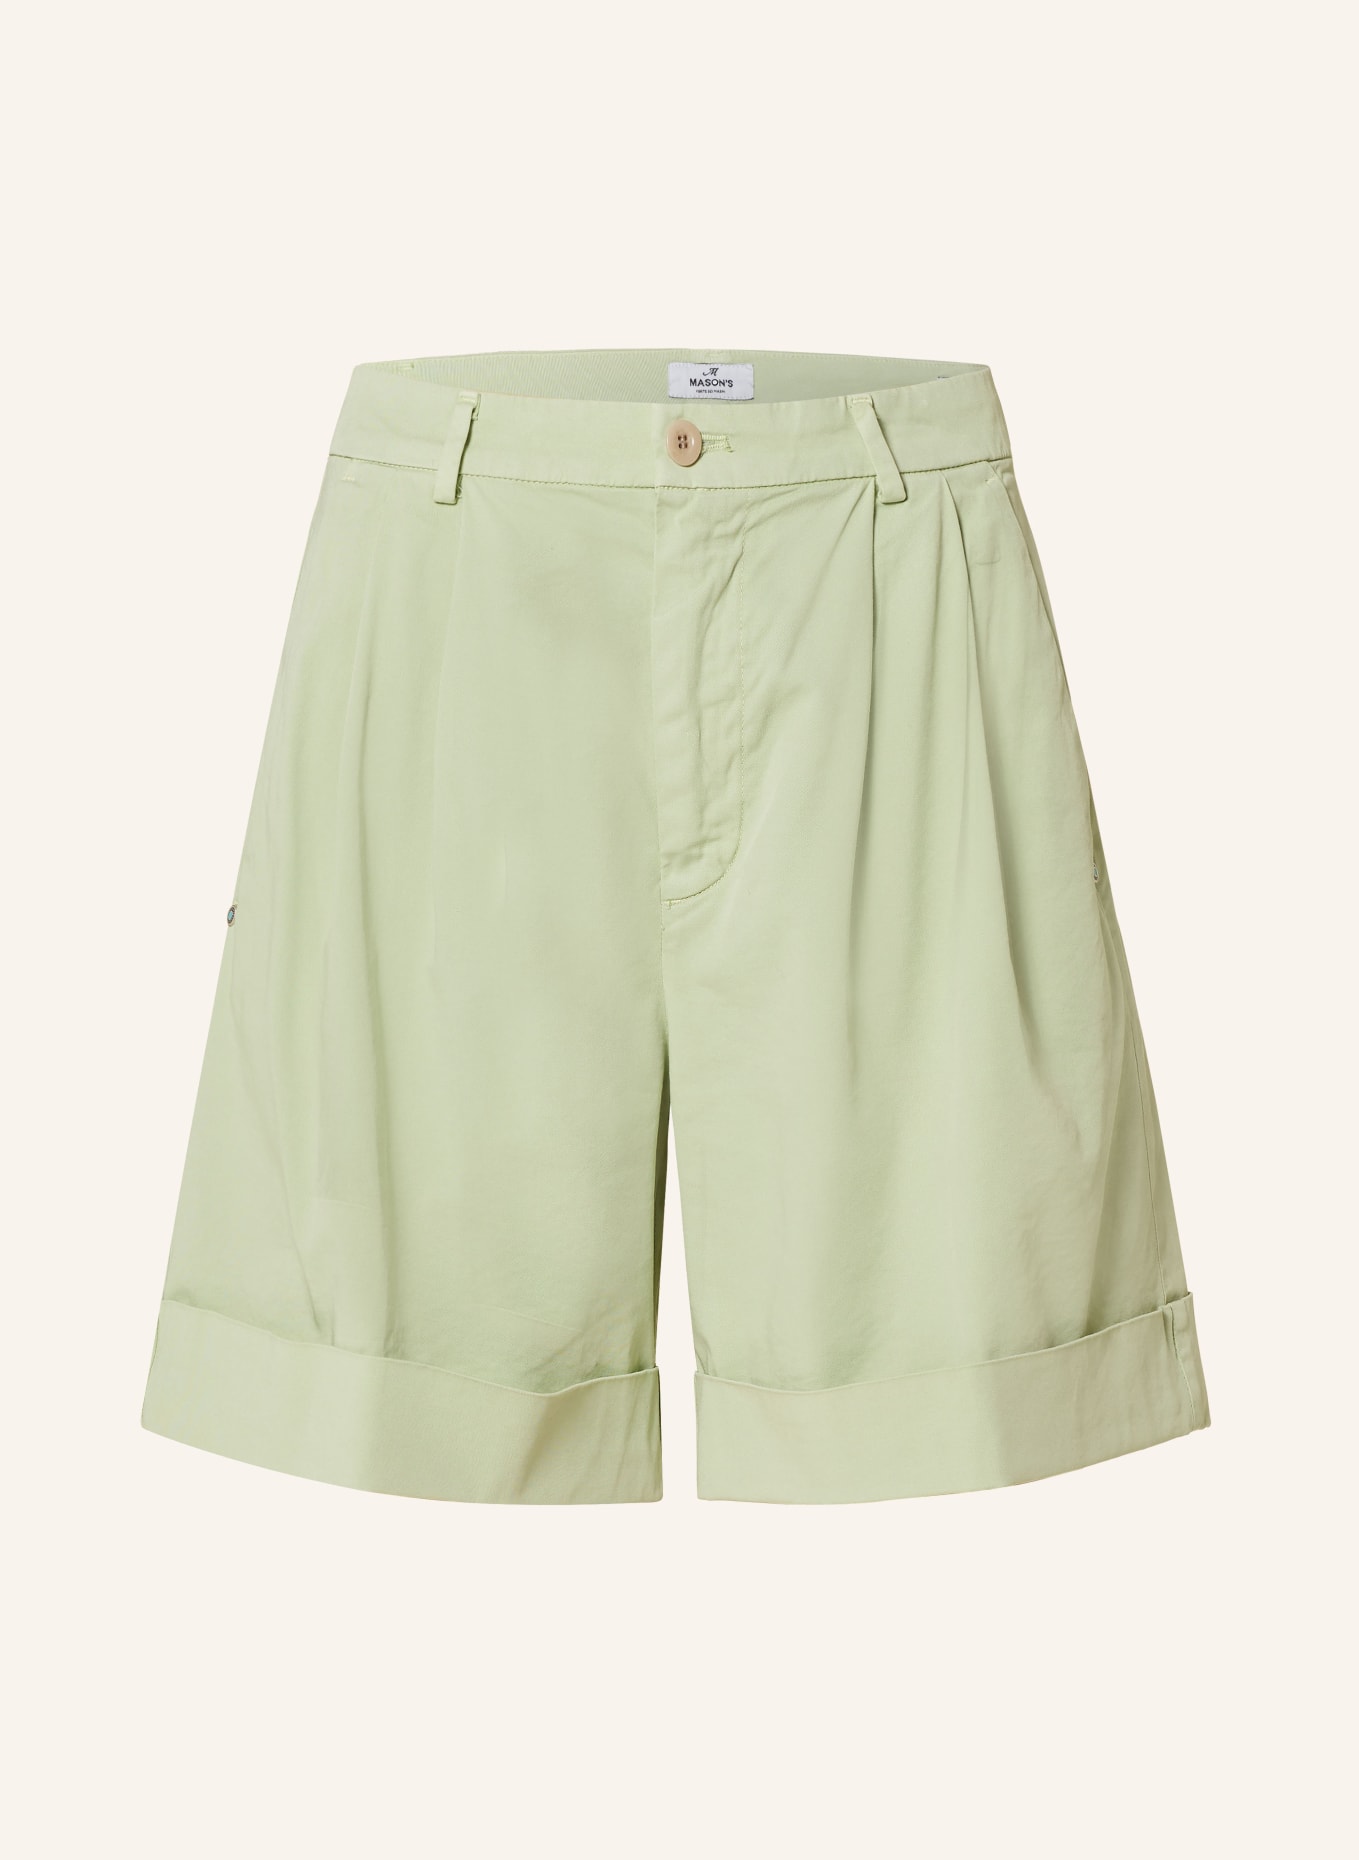 MASON'S Shorts, Farbe: HELLGRÜN (Bild 1)